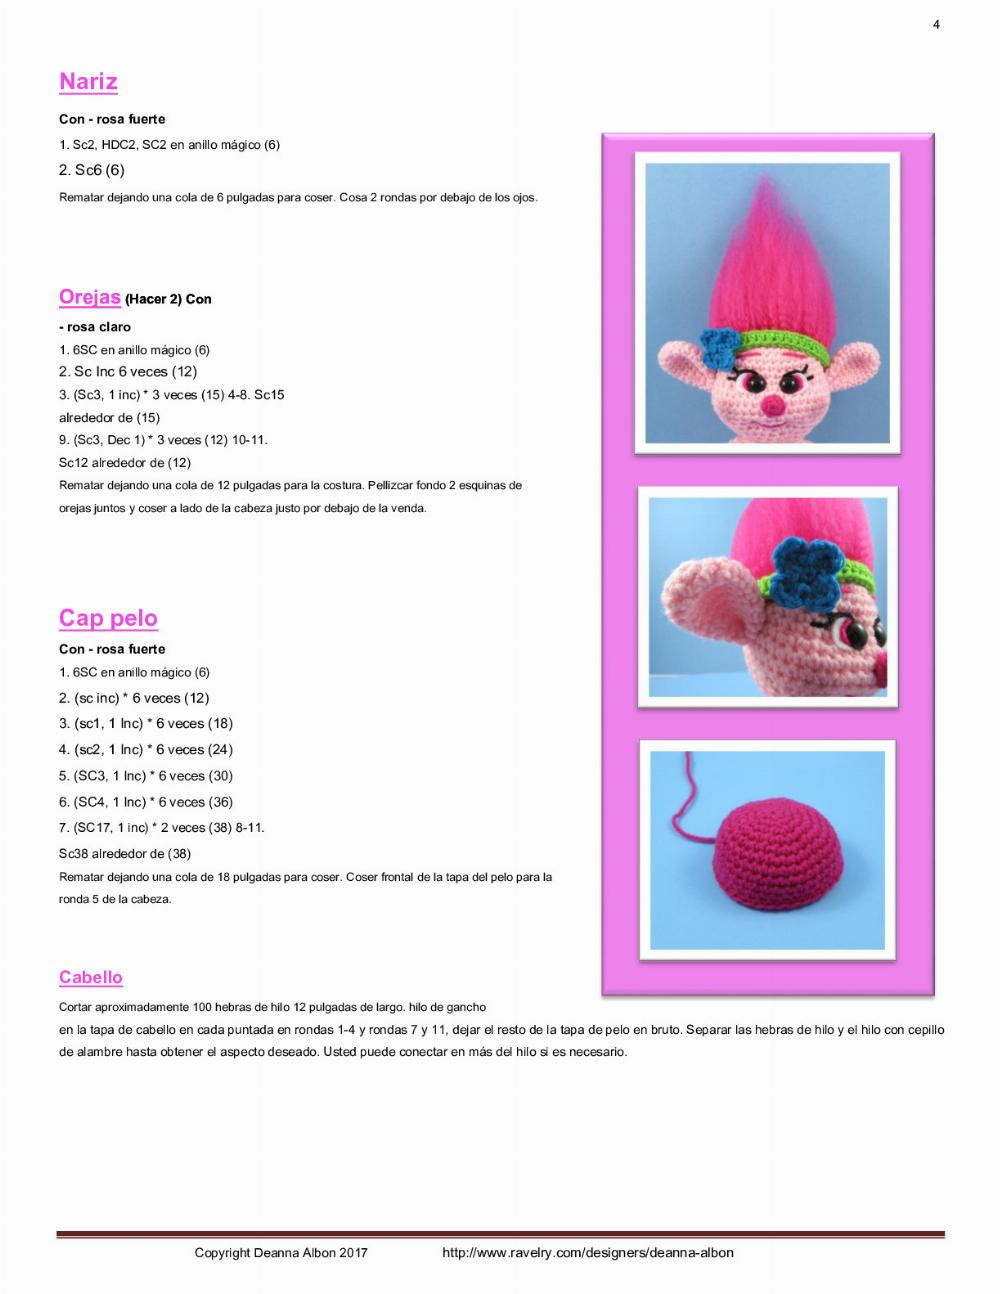 Cómo tejer muñecas Poppy y Branch de Trolls a crochet